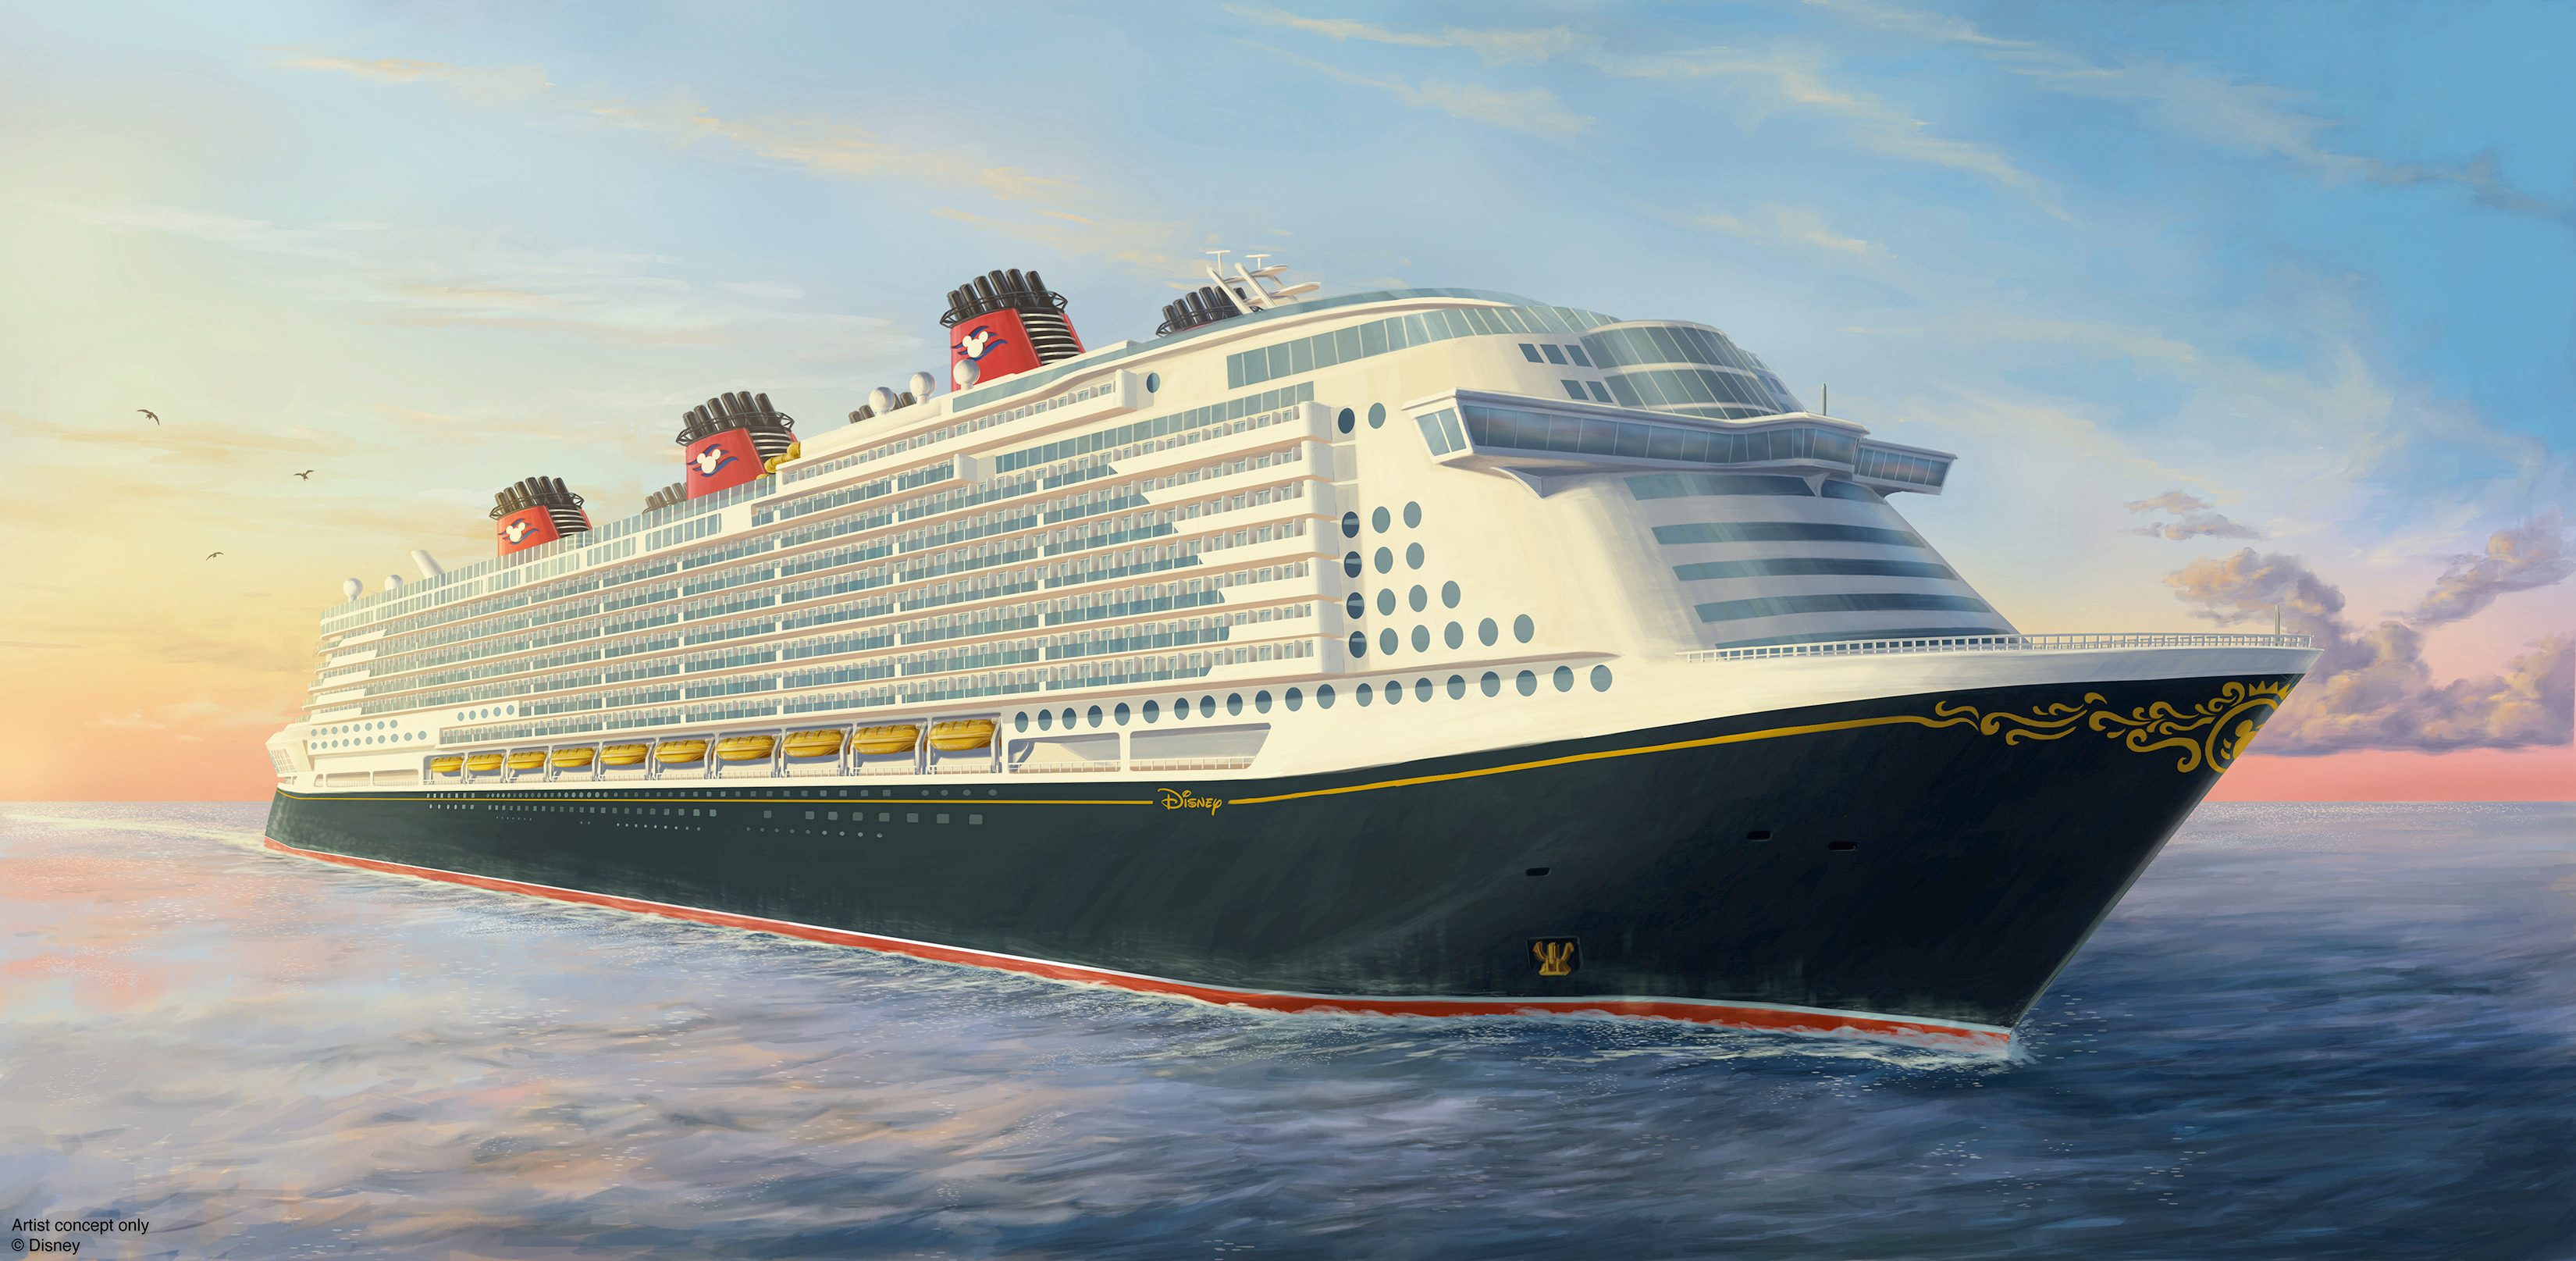 Disney compra de um dos maiores navios do mundo